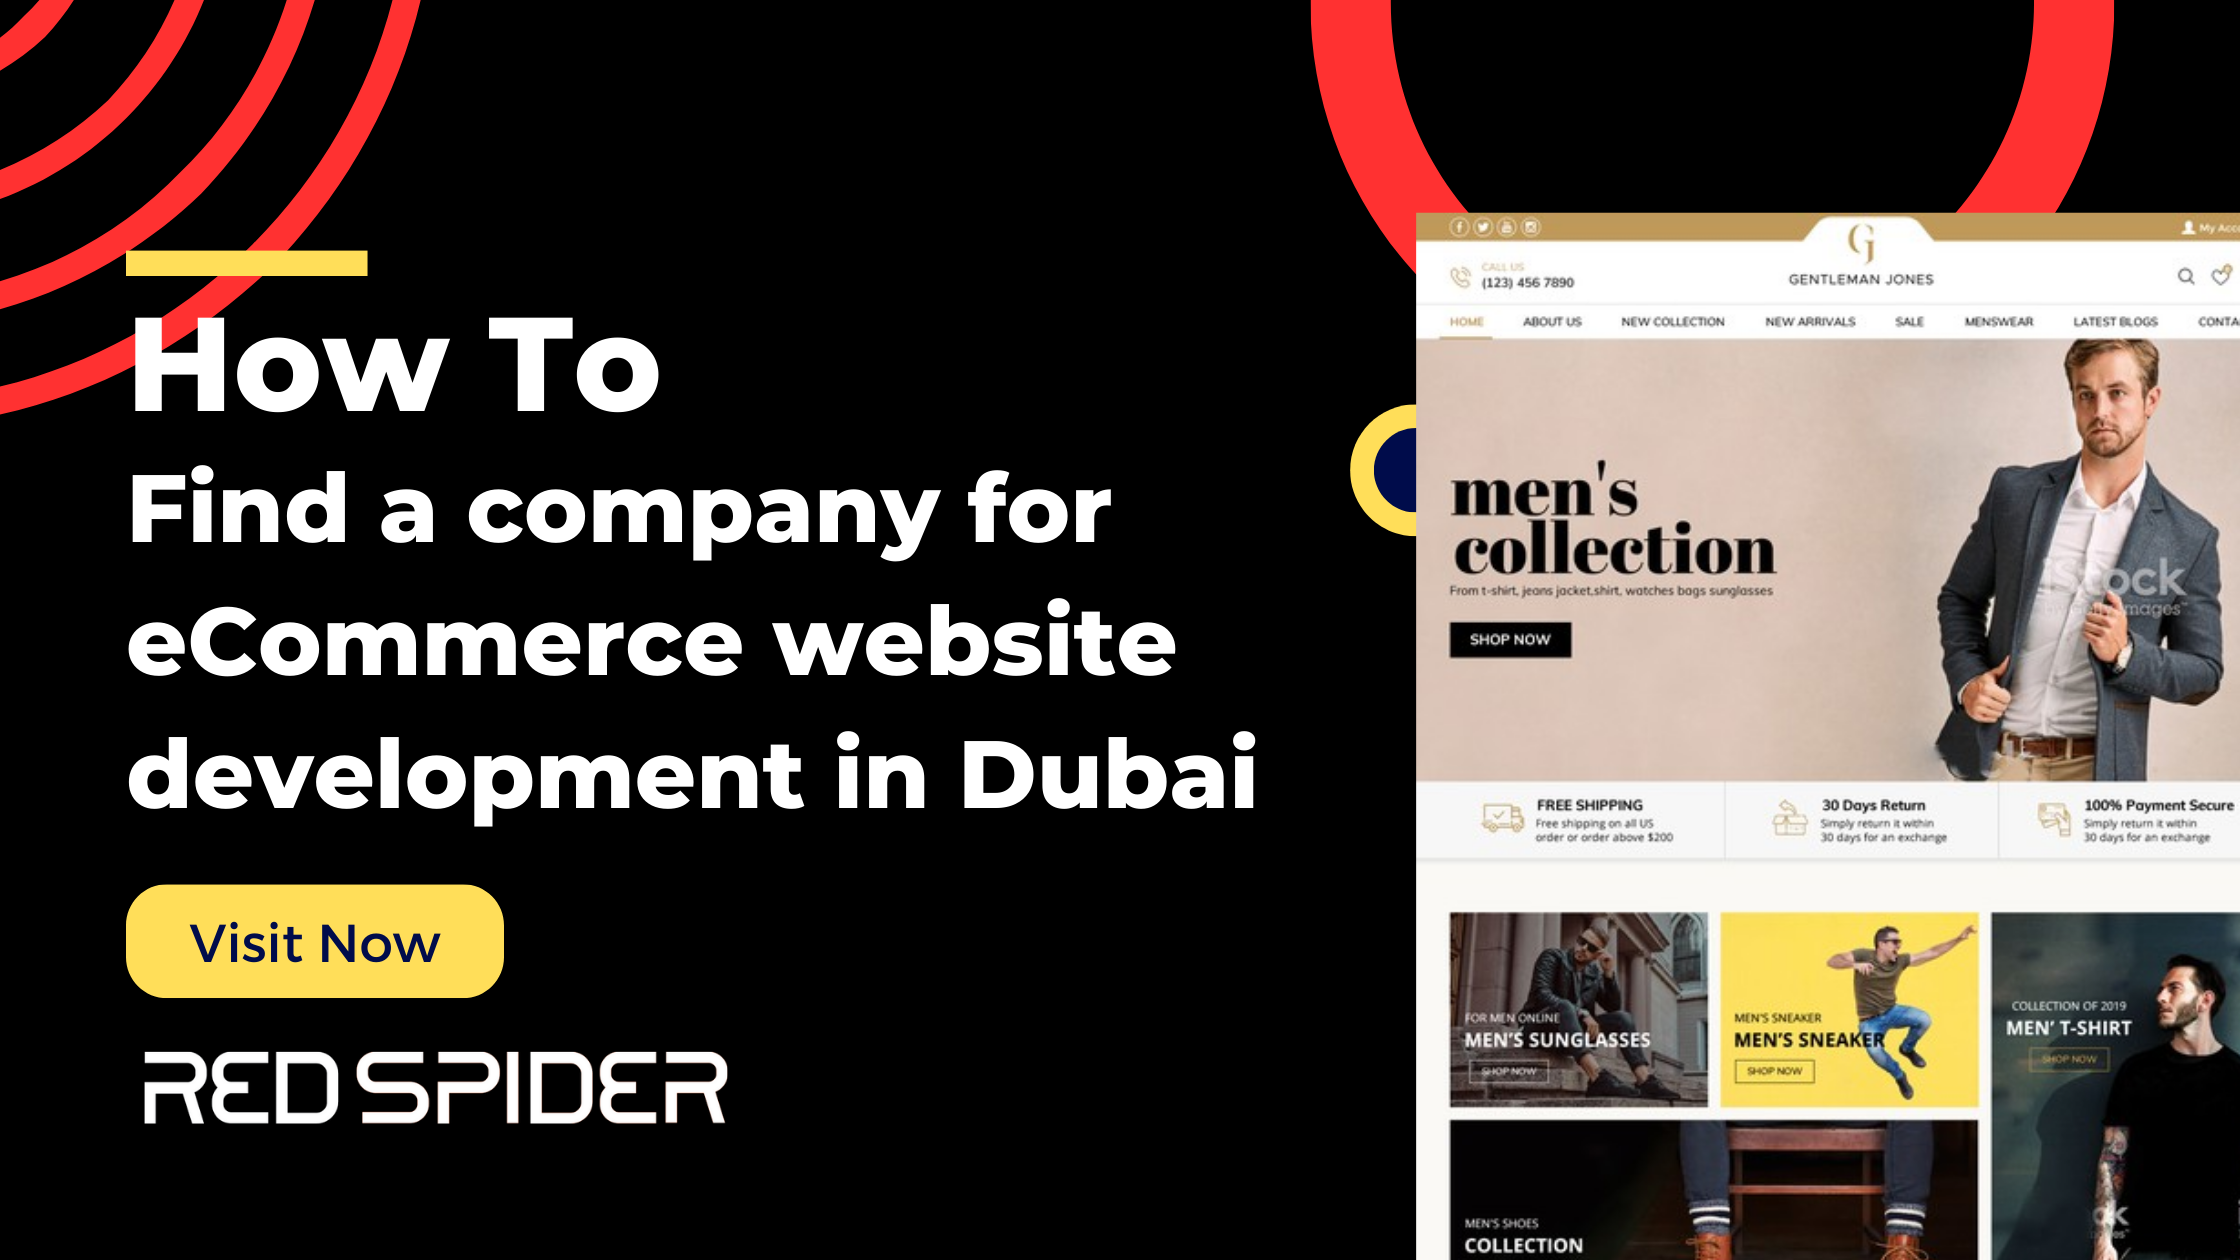 ecommerce website development in Dubai